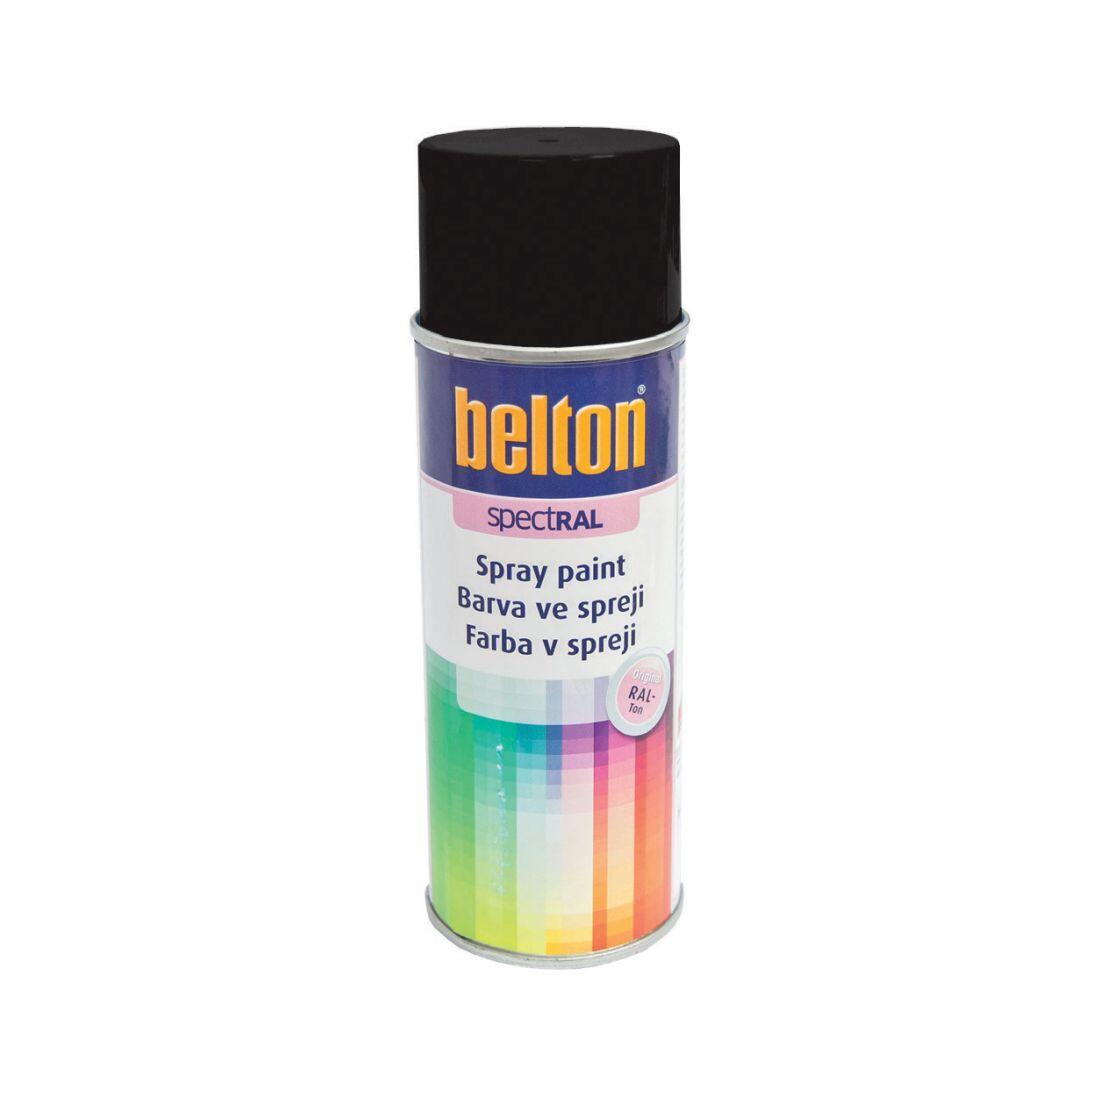 barva ve spreji BELTON RAL 9005, 400ml ČER 0.31 Kg MAXMIX Sklad14 825120 30